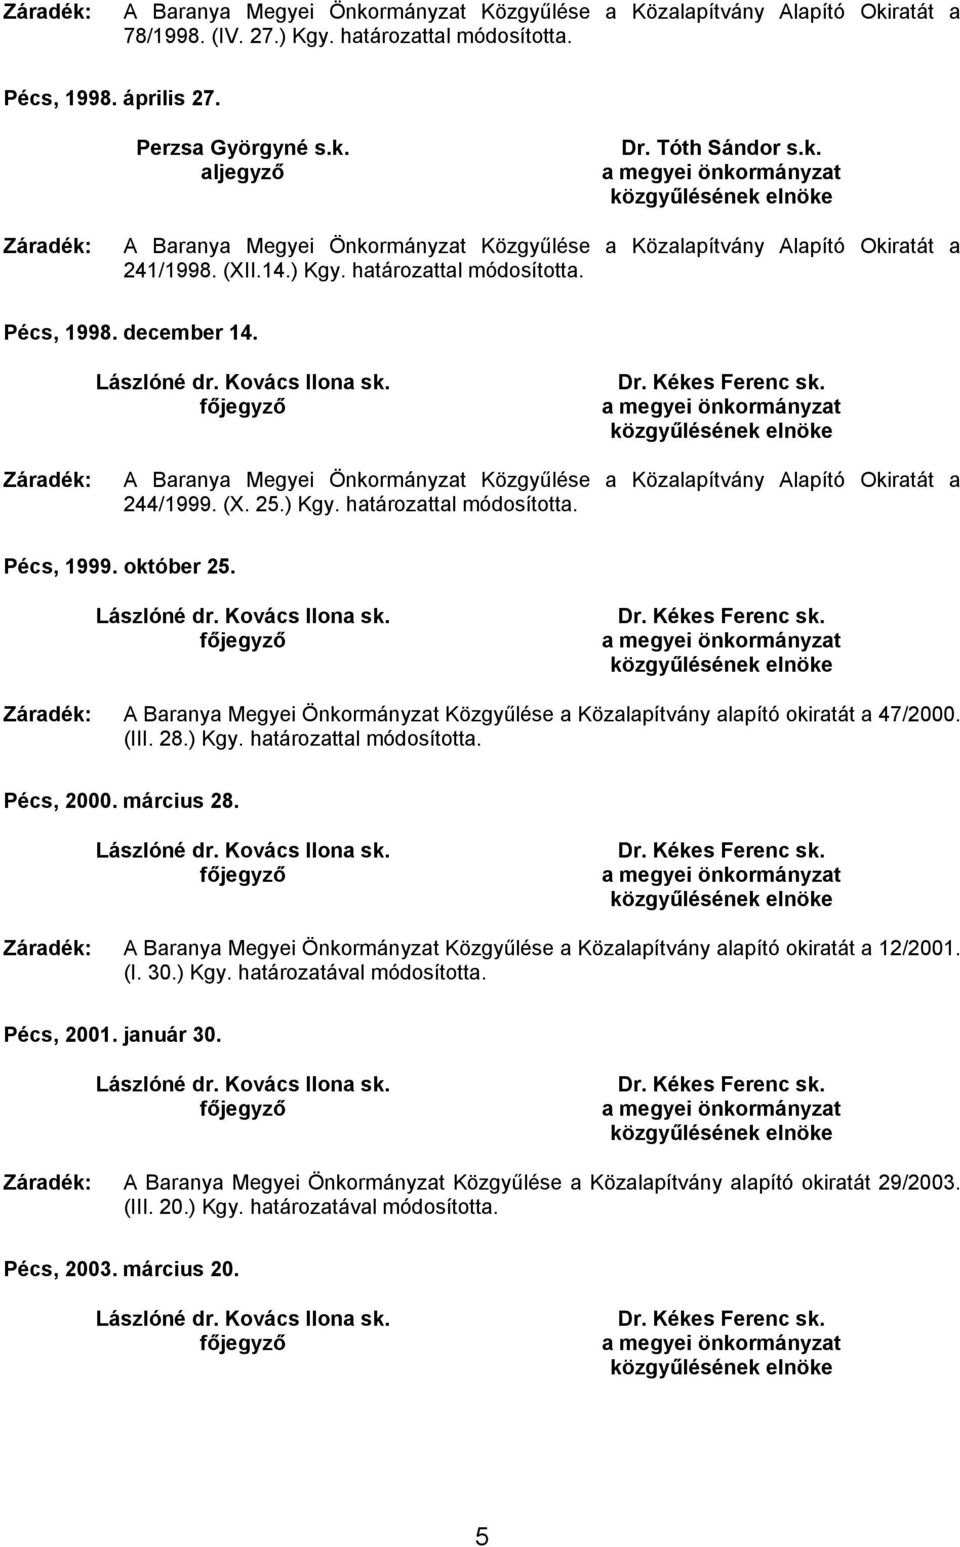 Záradék: A Baranya Megyei Önkormányzat Közgyűlése a Közalapítvány Alapító Okiratát a 244/1999. (X. 25.) Kgy. határozattal módosította. Pécs, 1999. október 25.